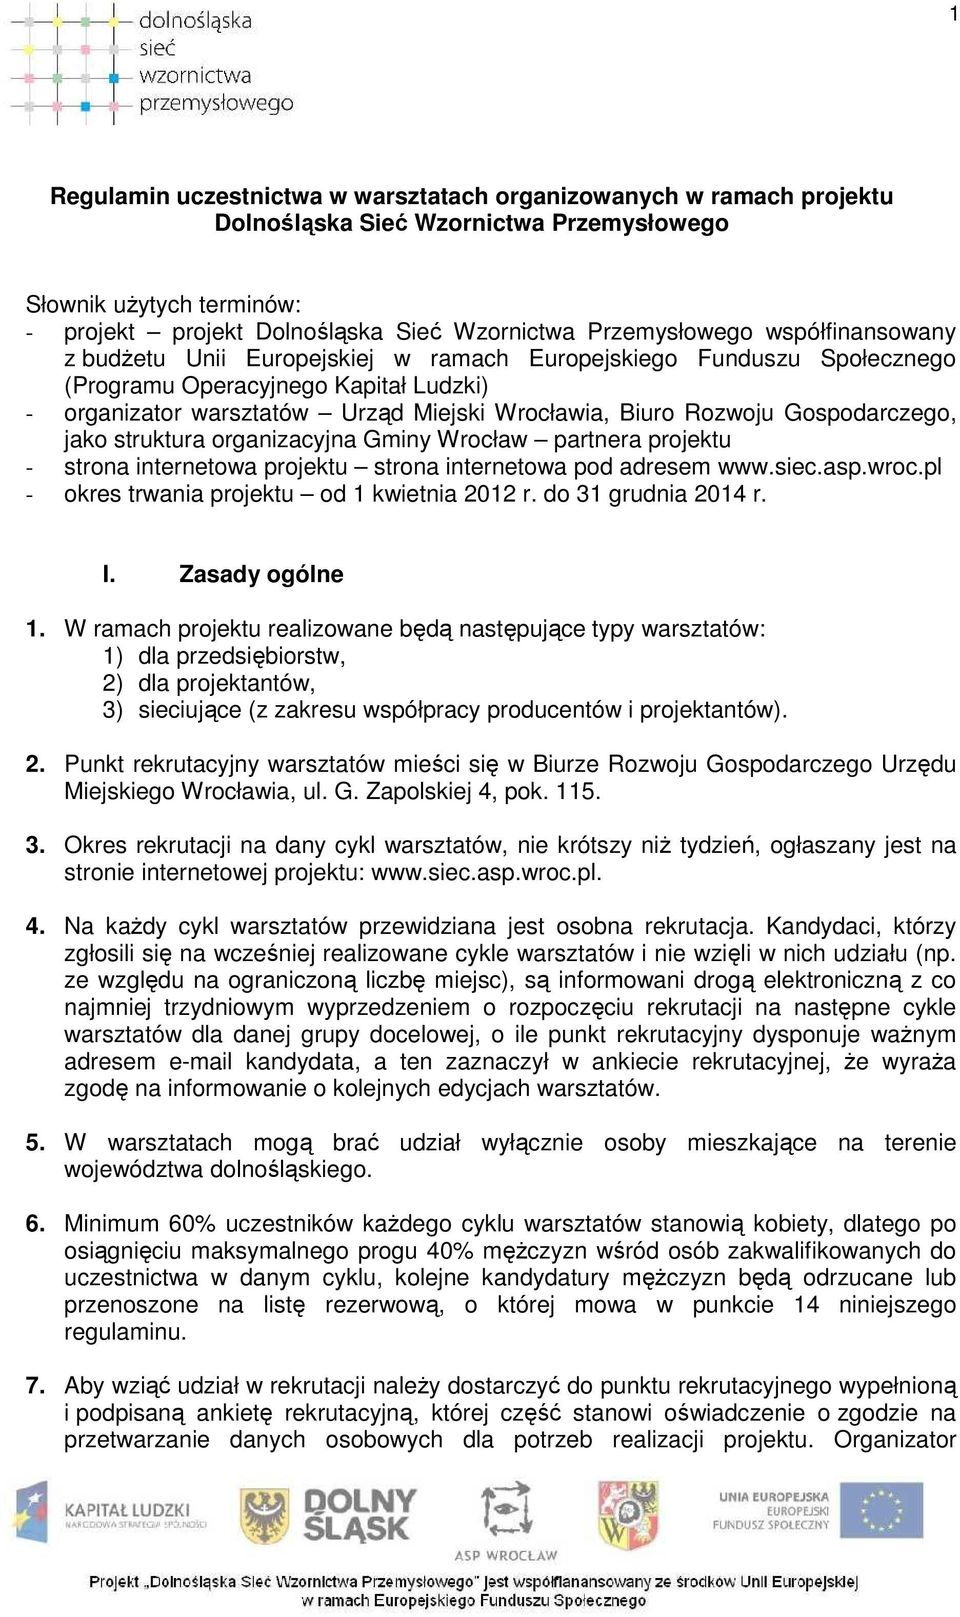 Gospodarczego, jako struktura organizacyjna Gminy Wrocław partnera projektu - strona internetowa projektu strona internetowa pod adresem www.siec.asp.wroc.